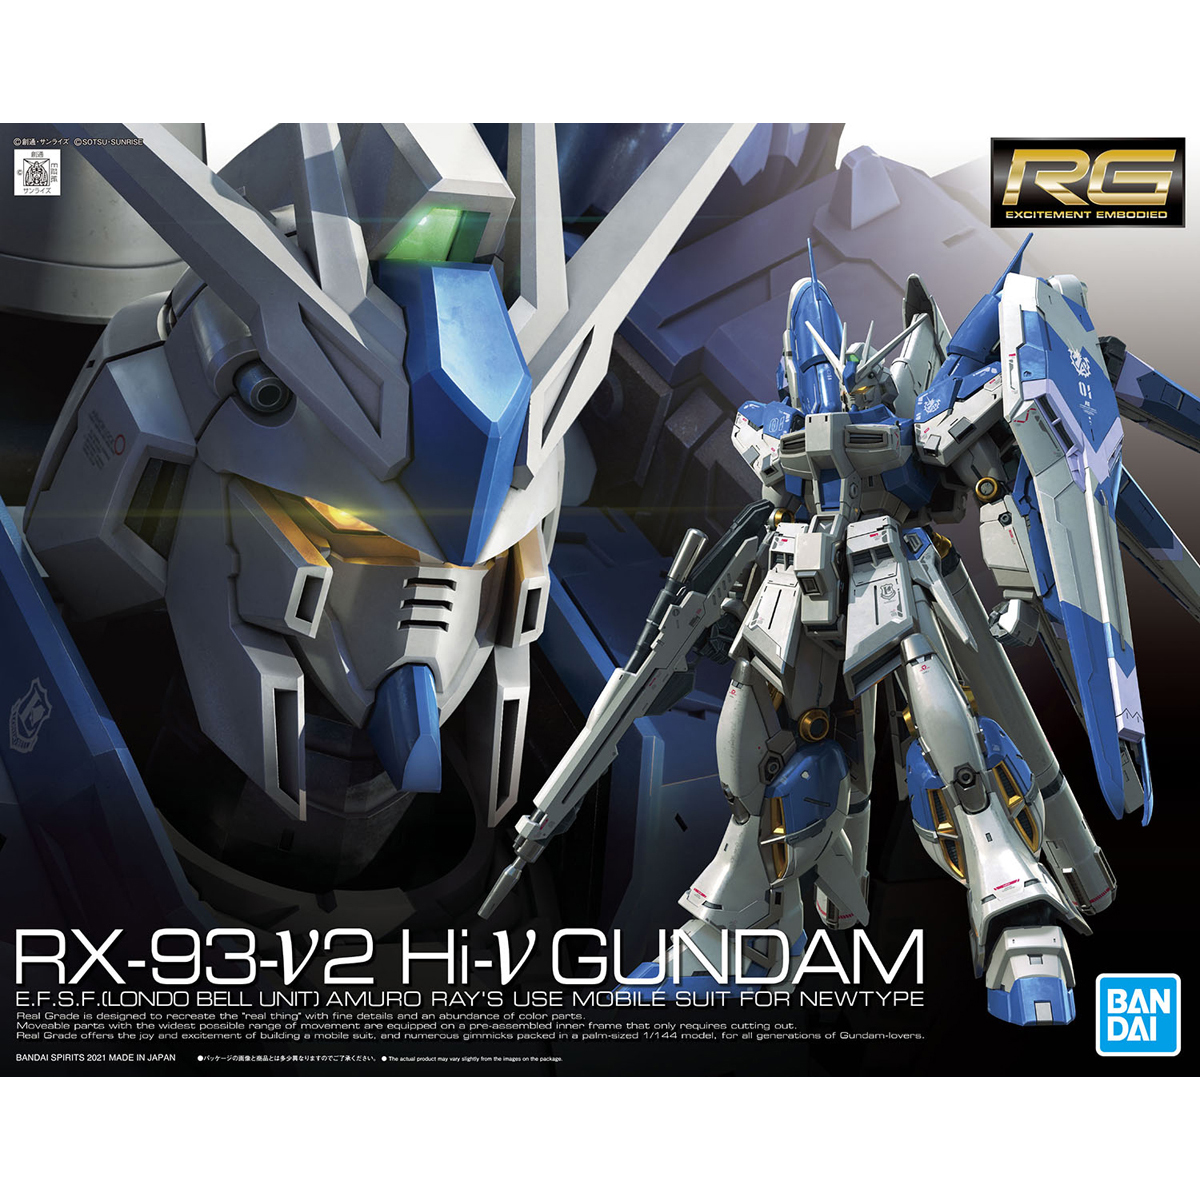 Gundam RG 1/144 RX-93-v2 Hi-v Gundam Model Kit – Midwest Hobby and